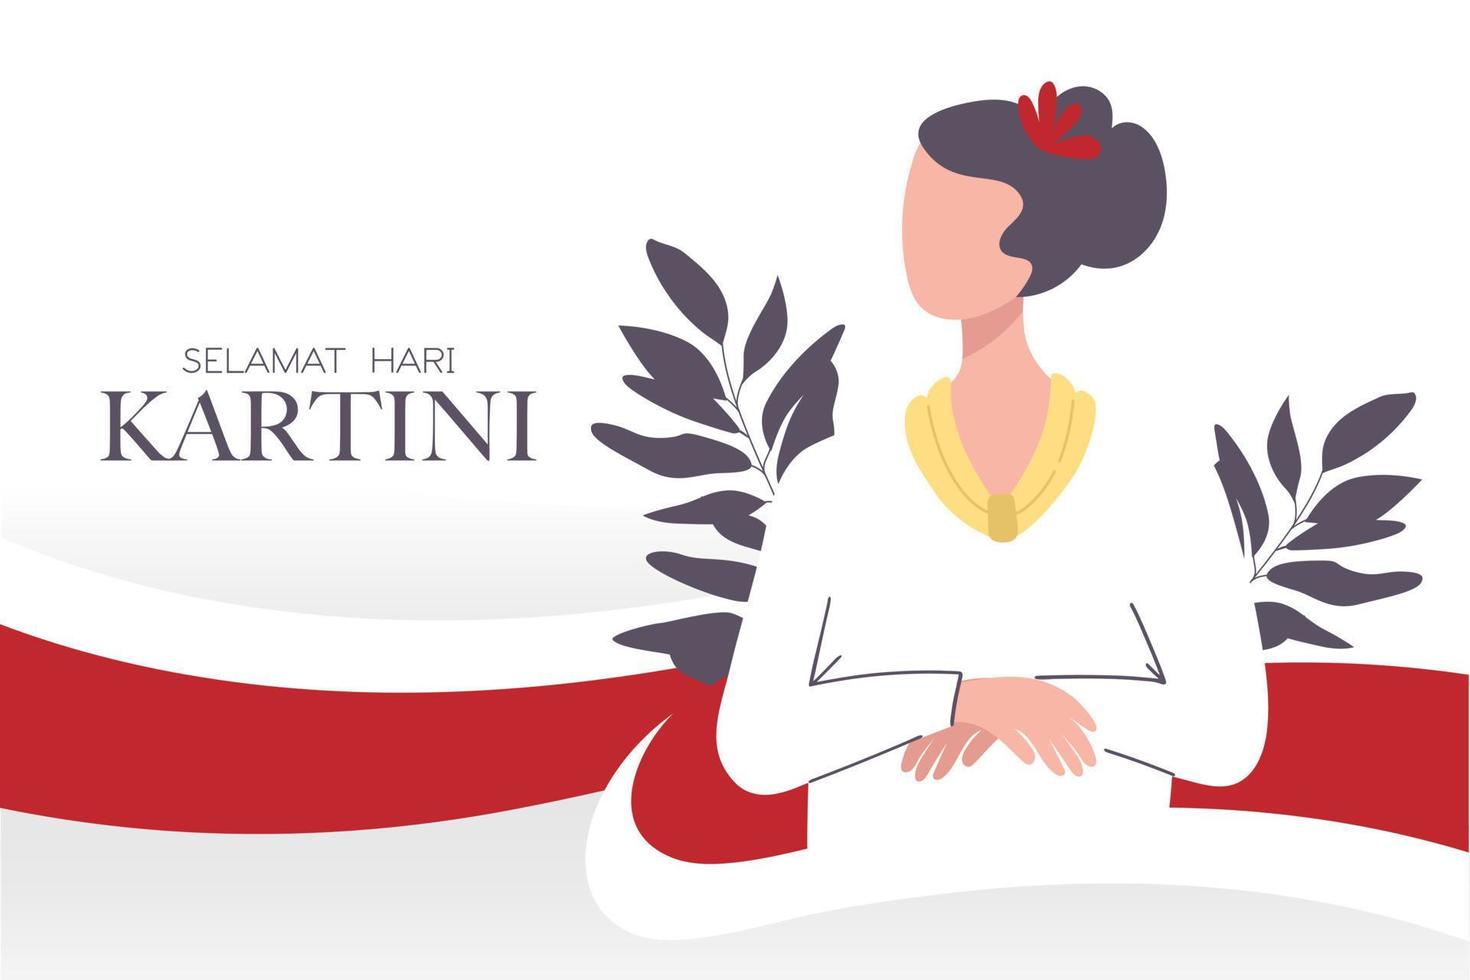 selamat hari kartini celebrazione felice giorno kartini. attivista indonesiano che ha sostenuto i diritti delle donne e l'istruzione femminile. eroi del femminismo. vettore